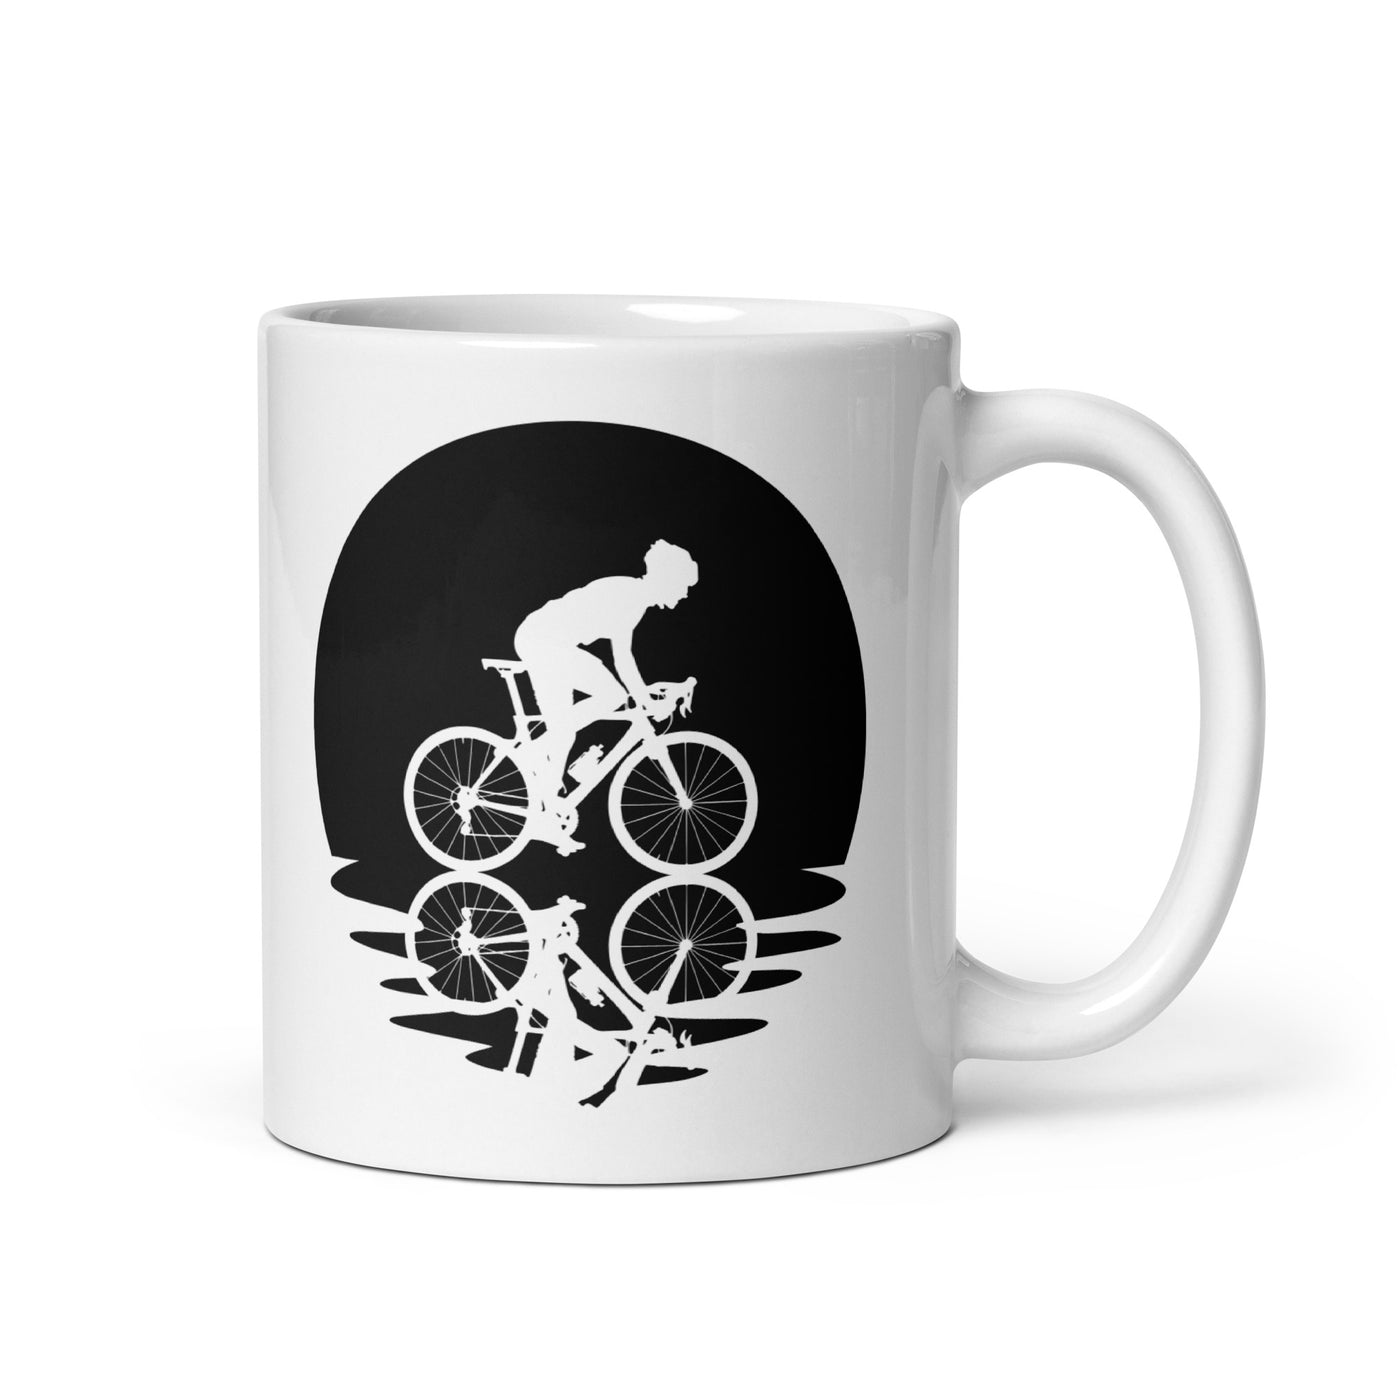 Circle And Reflection - Man Cycling - Tasse fahrrad